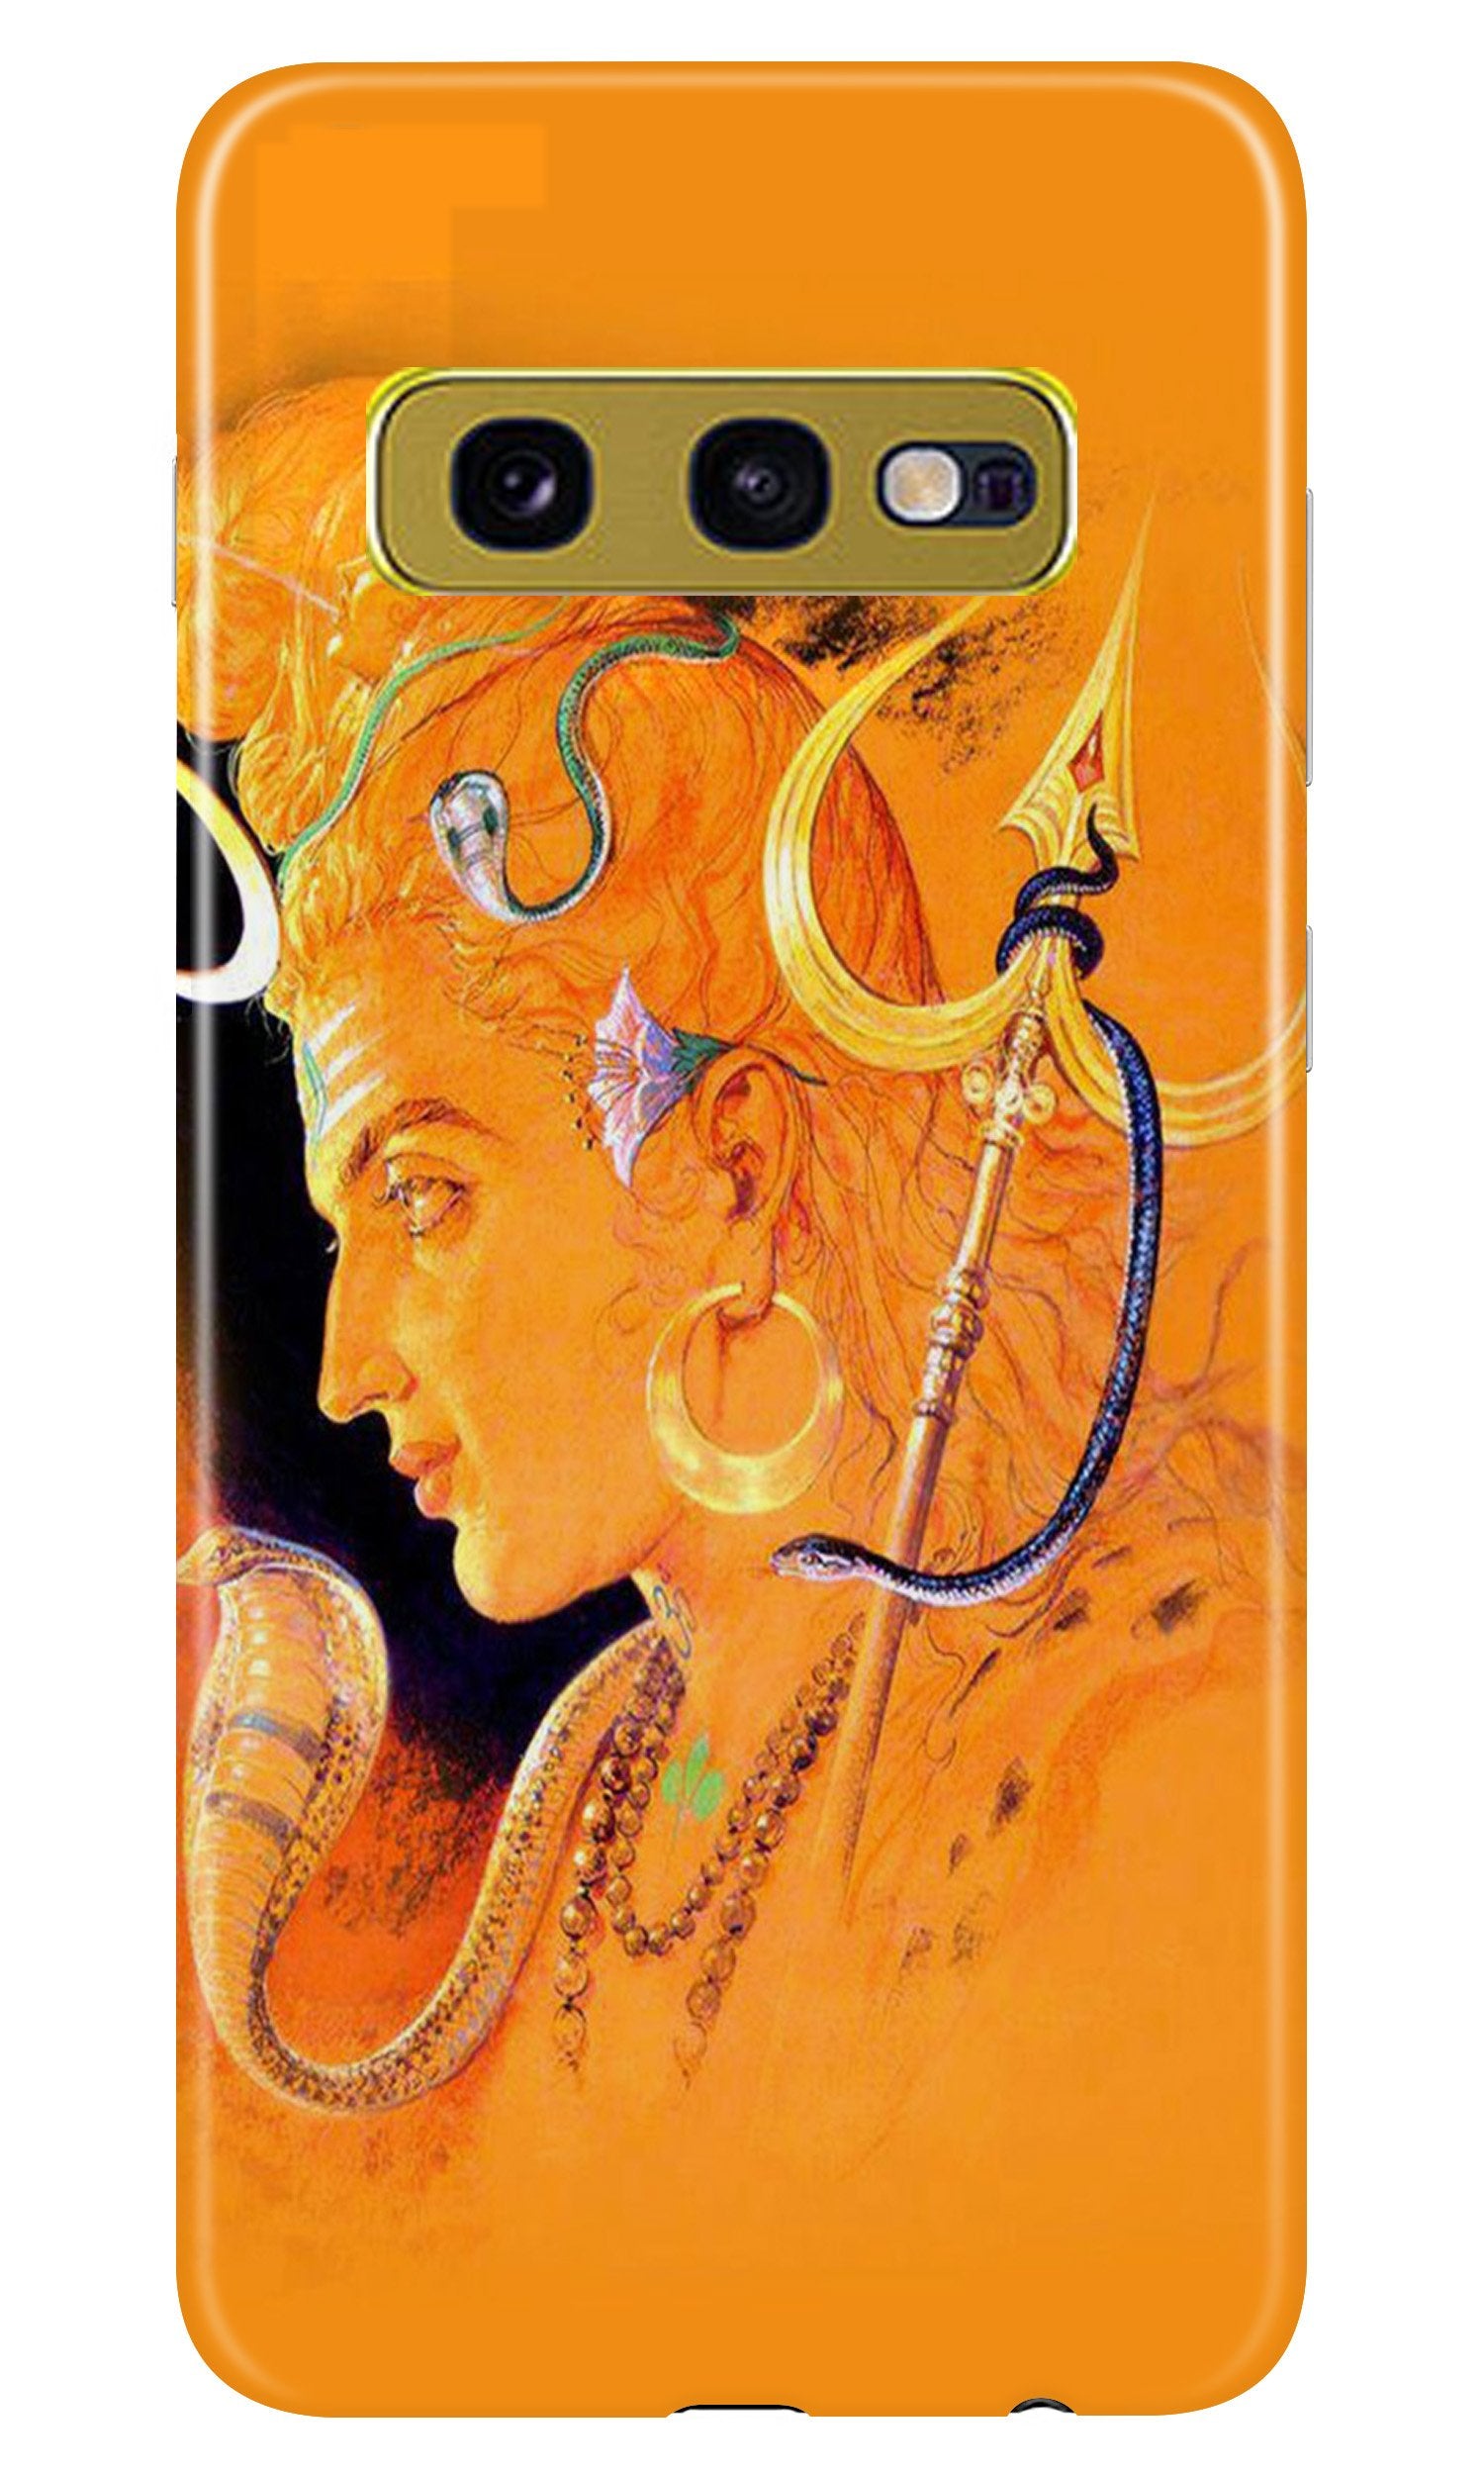 Lord Shiva Case for Samsung Galaxy S10E (Design No. 293)